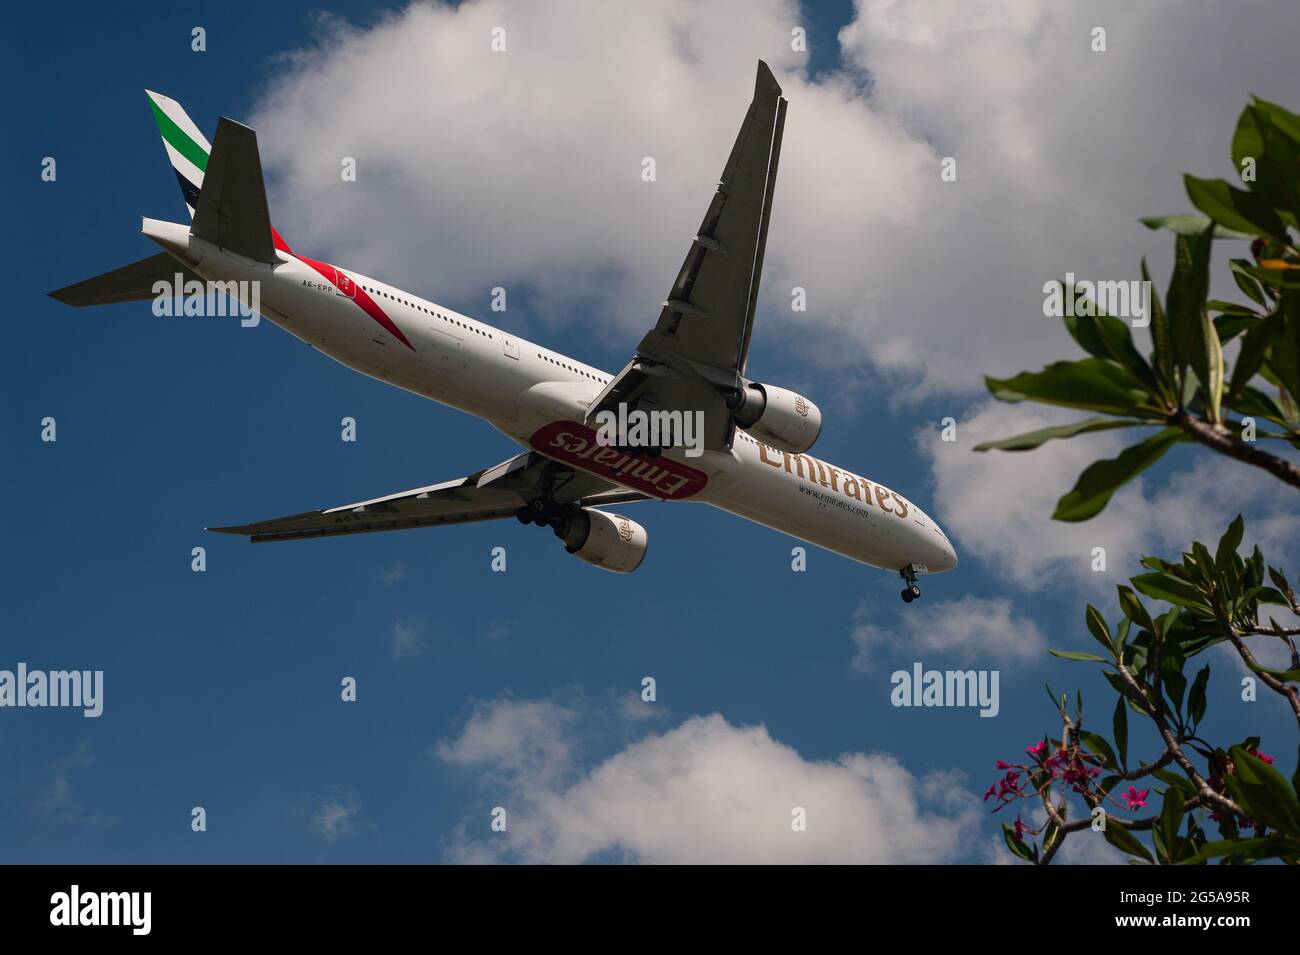 23.06.2021, Singapur, Republik Singapur, Asien - ein Passagierflugzeug der Emirates Airline Boeing 777-300 er nähert sich dem Changi Airport zur Landung. Stockfoto